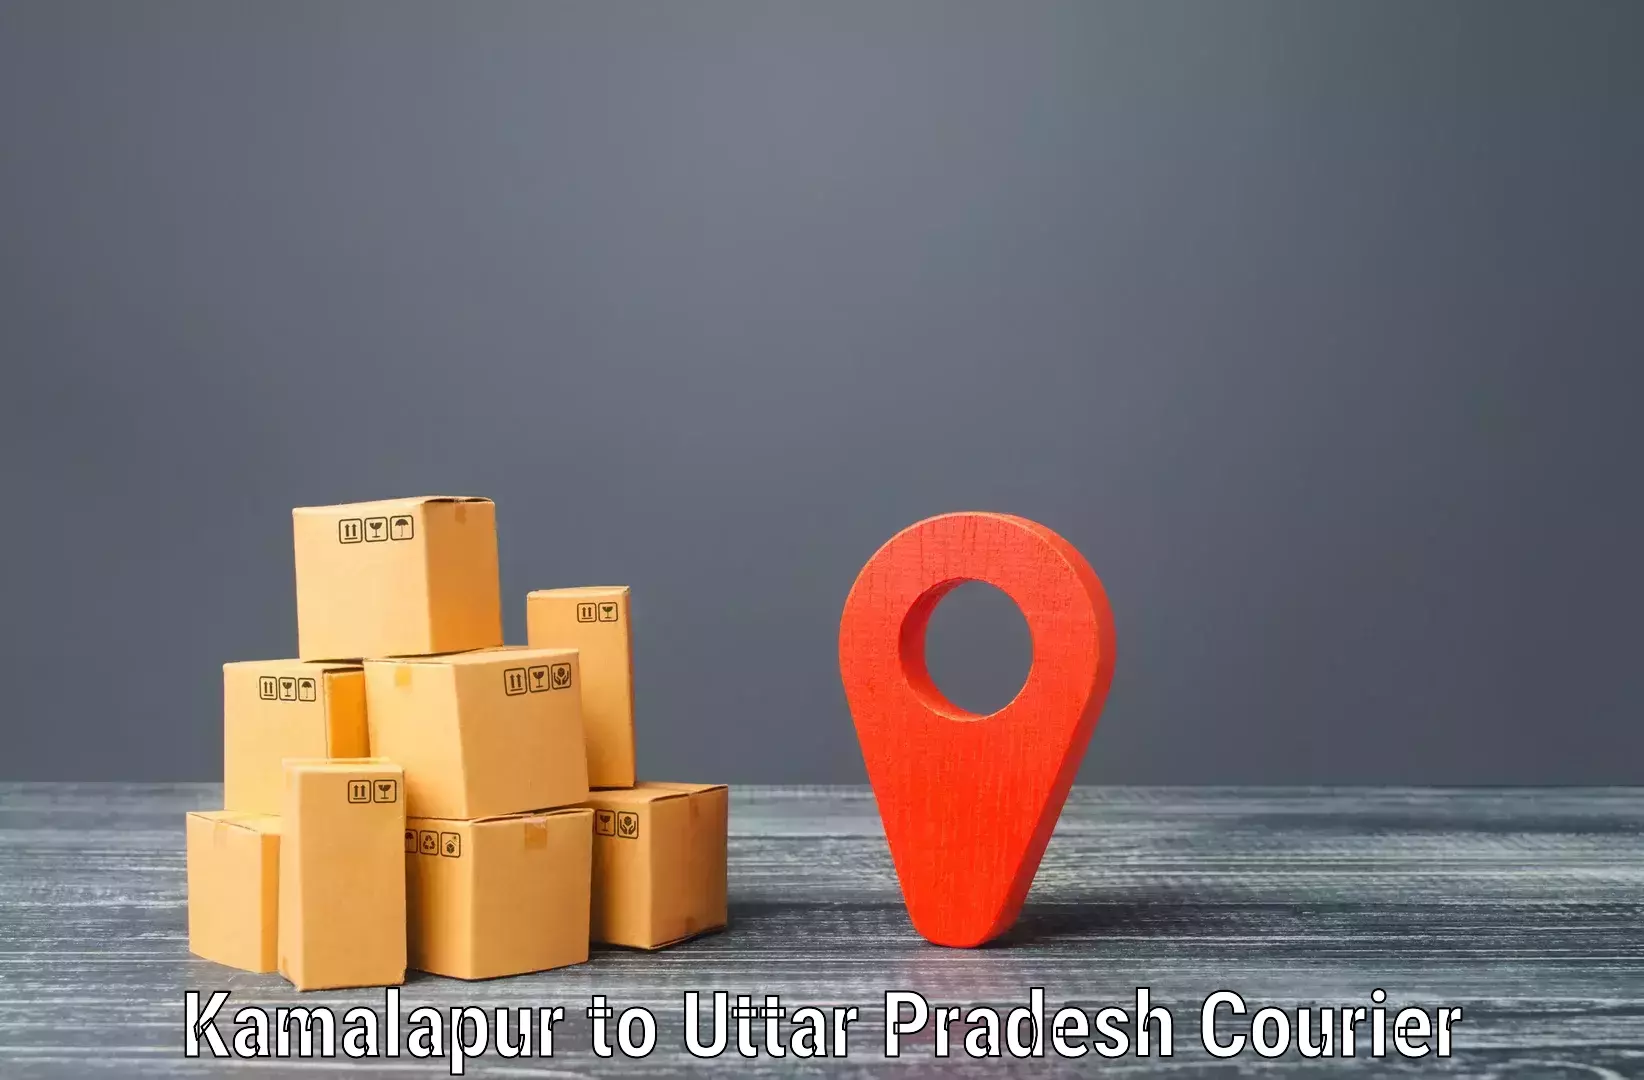 Bulk shipment Kamalapur to Bansi